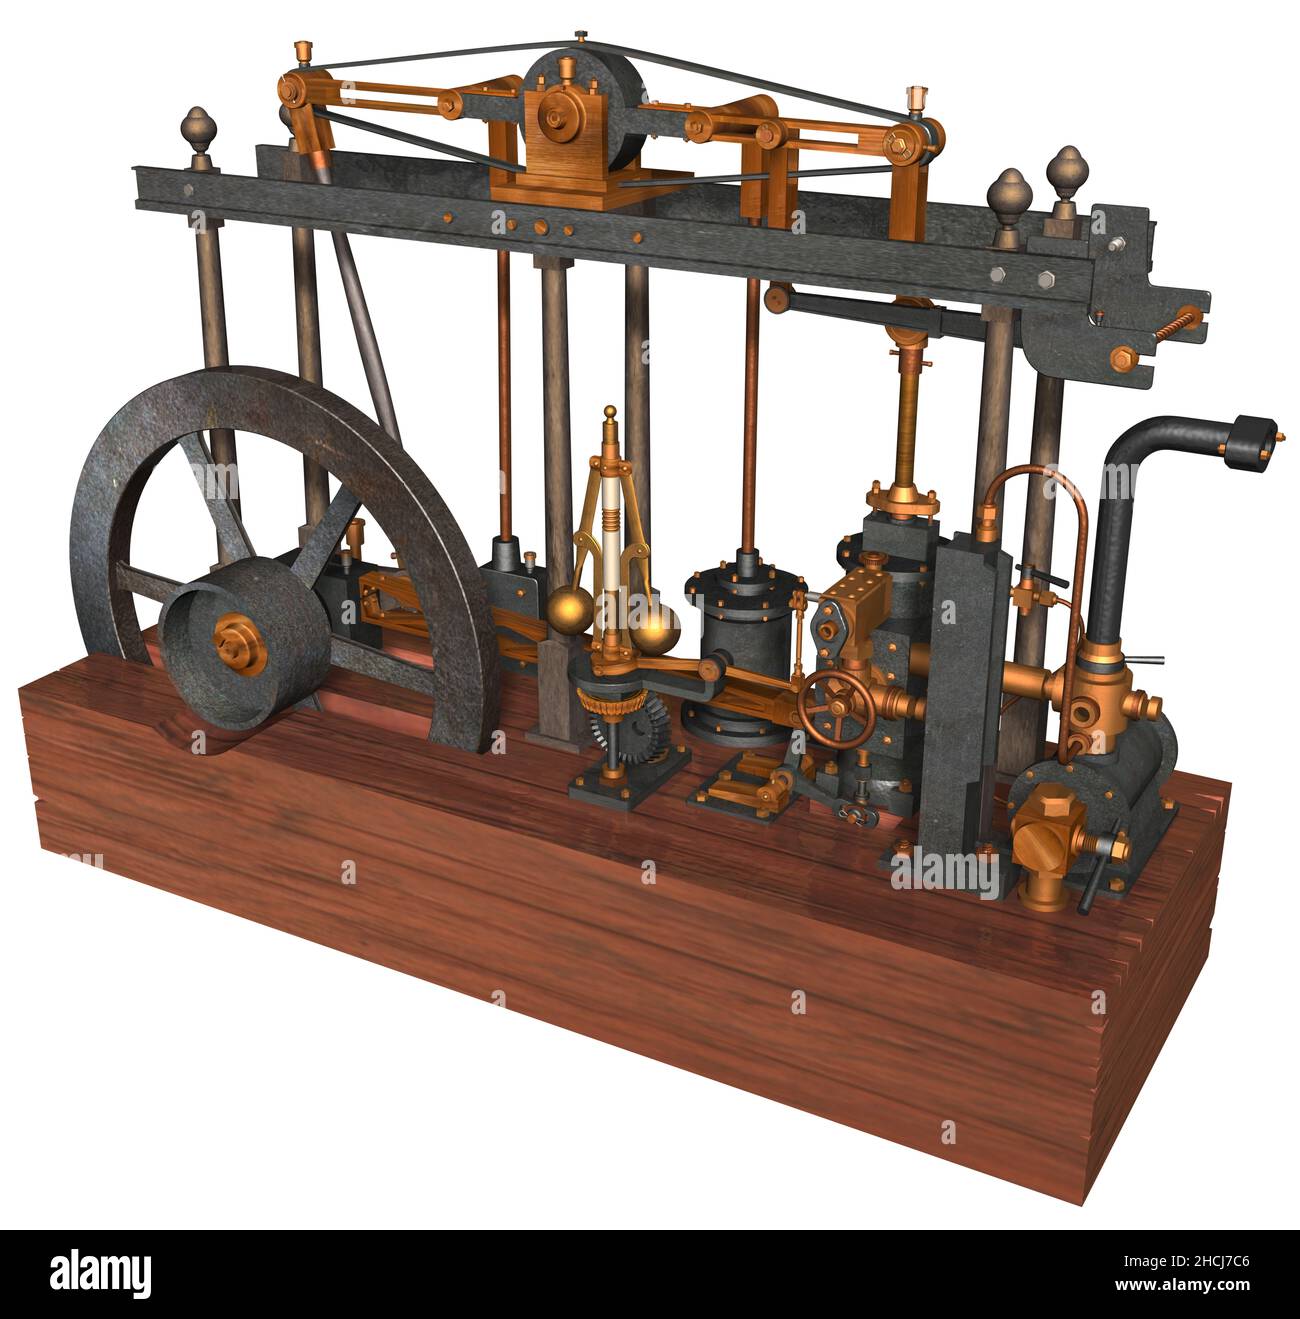 3D rappresentazione illustrazione di un motore a vapore ideato, costruito e perfezionato dall'inventore scozzese James Watt brevettato nel 1769. Foto Stock